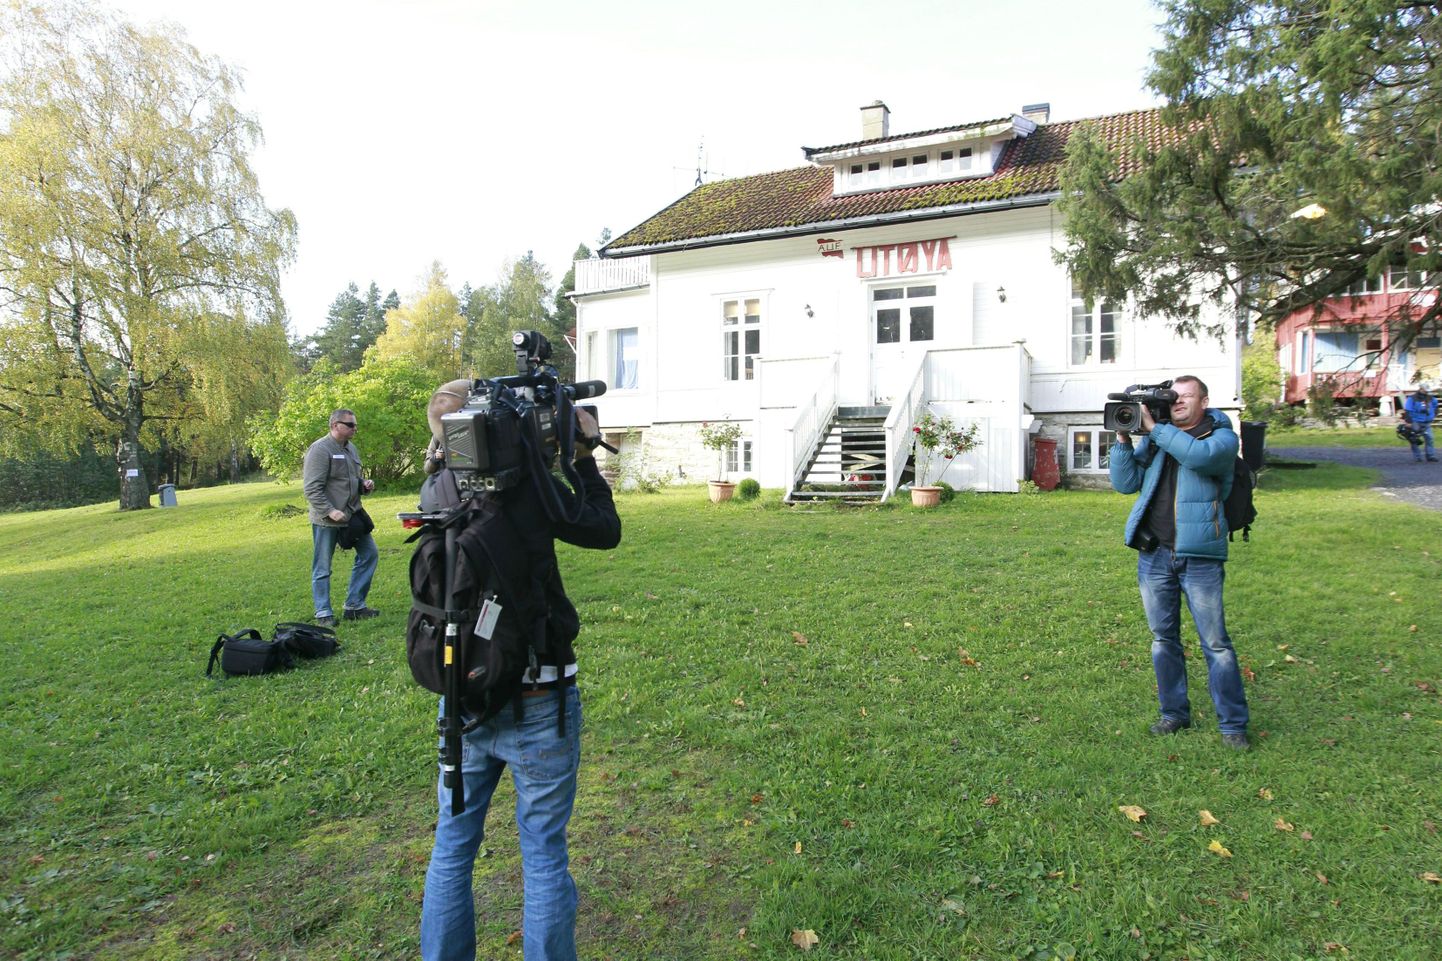 Ajakirjanikud Oslo lähedal Utøya saarel, kus juulis leidis aset õõvastav massimõrv.